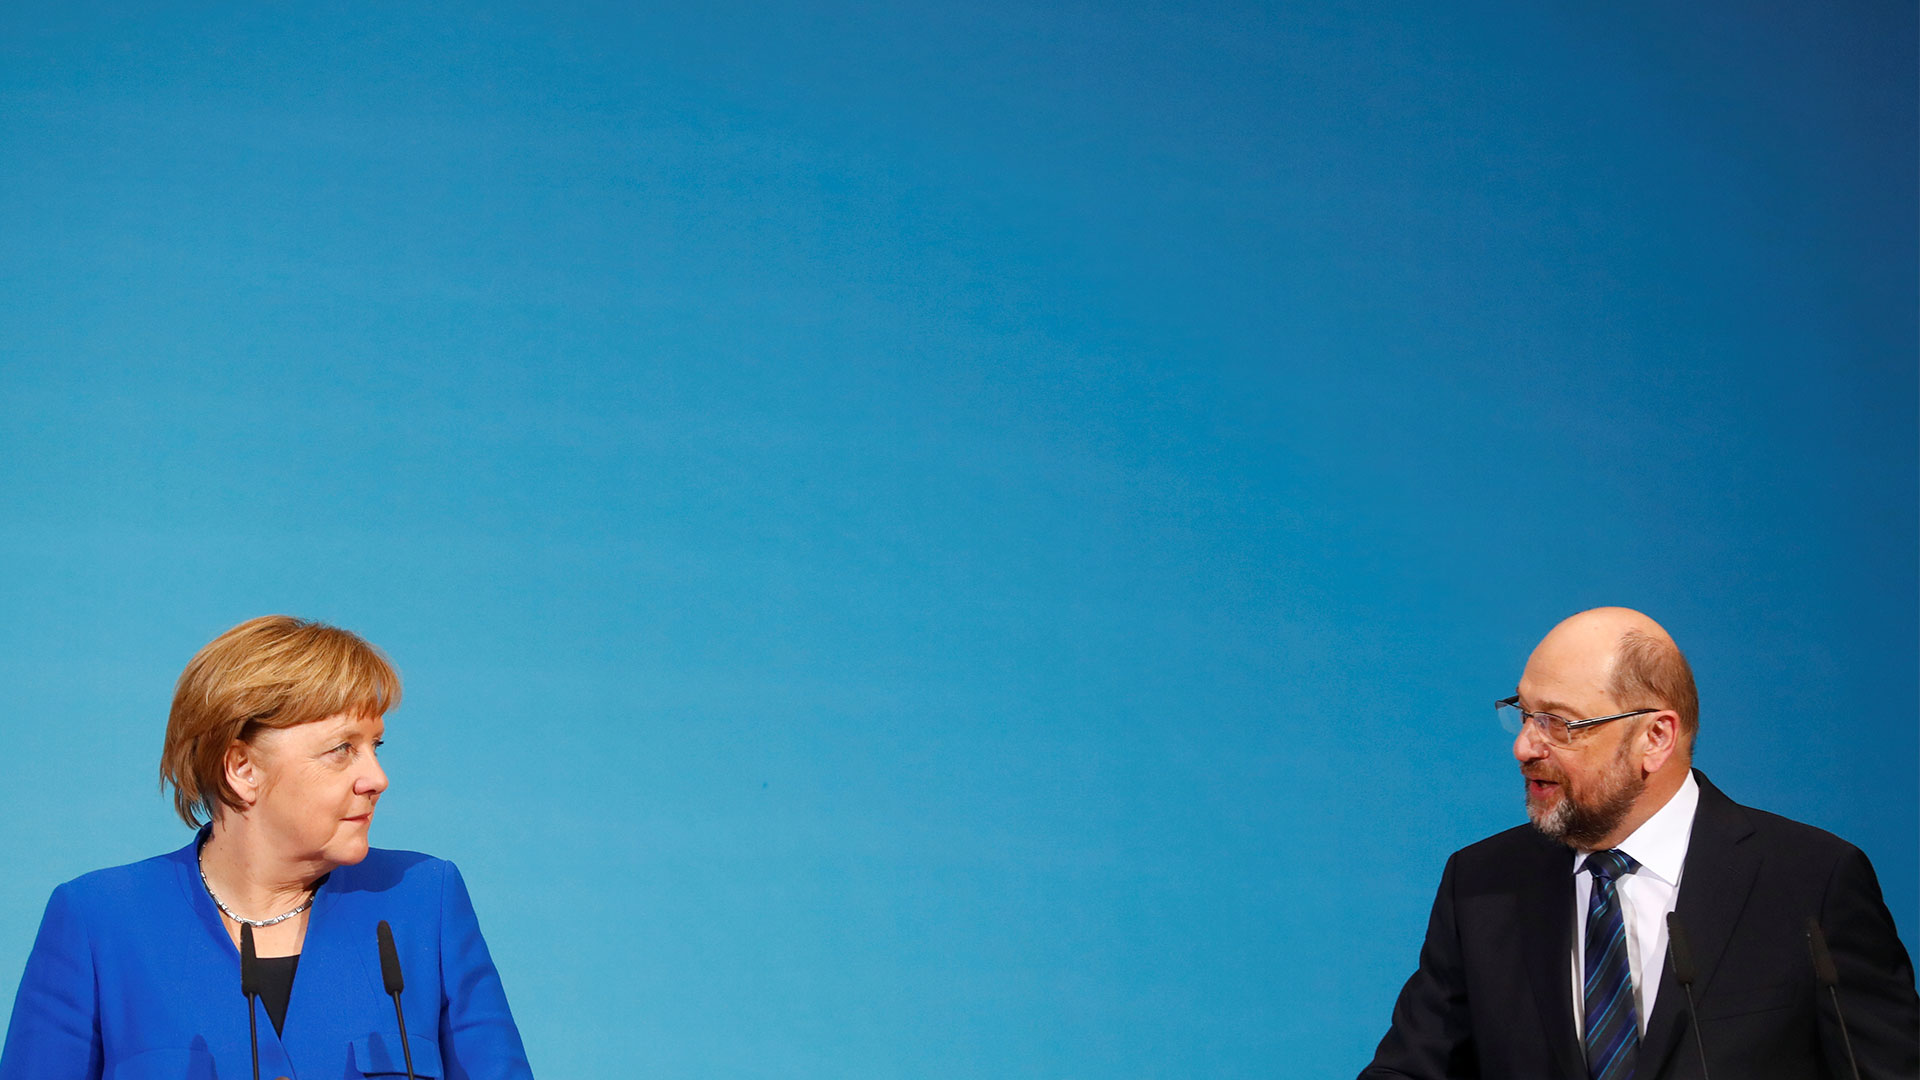 Merkel y Schulz alcanzan un acuerdo de gobierno en Alemania